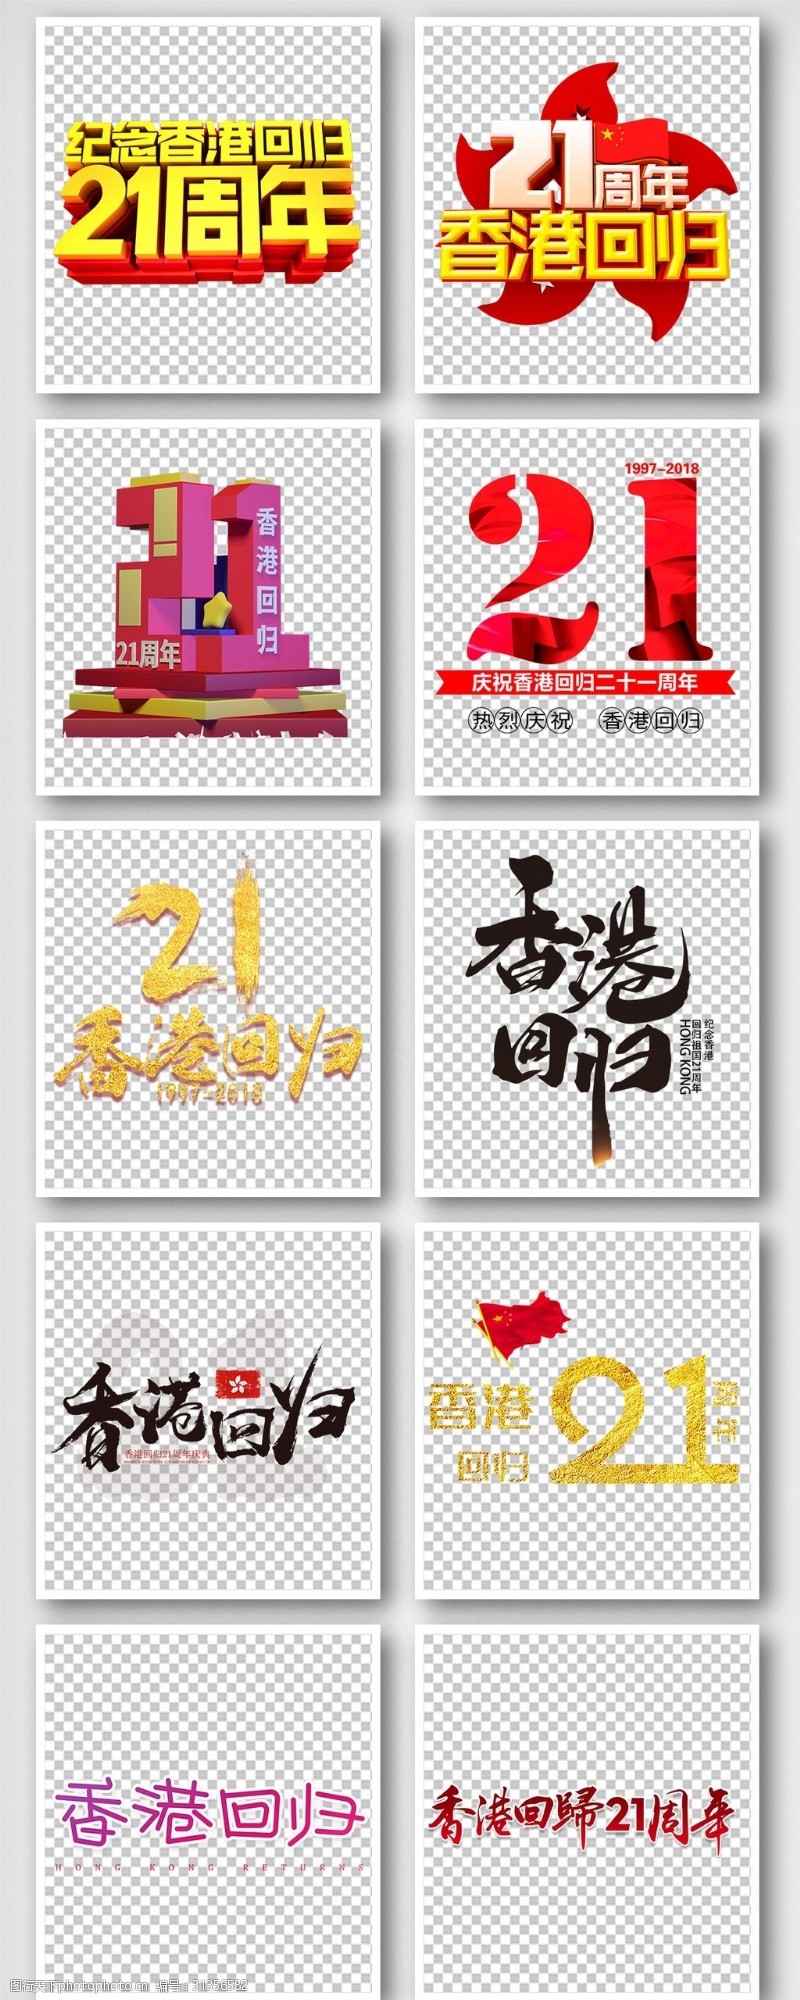 免费字体香港回归艺术字体设计排版素材